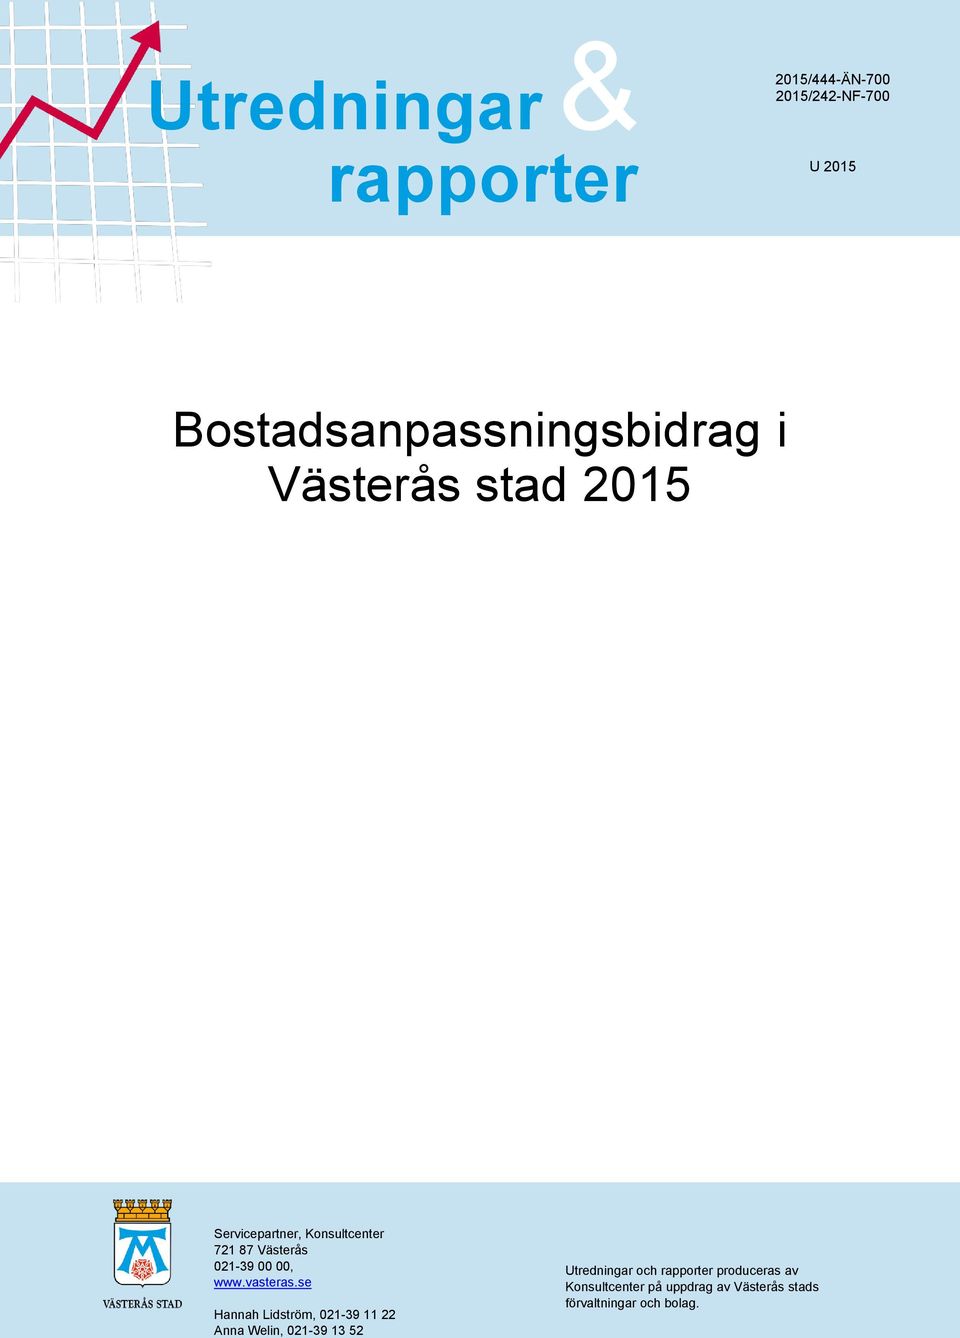 Västerås 021-39 00 00, www.vasteras.